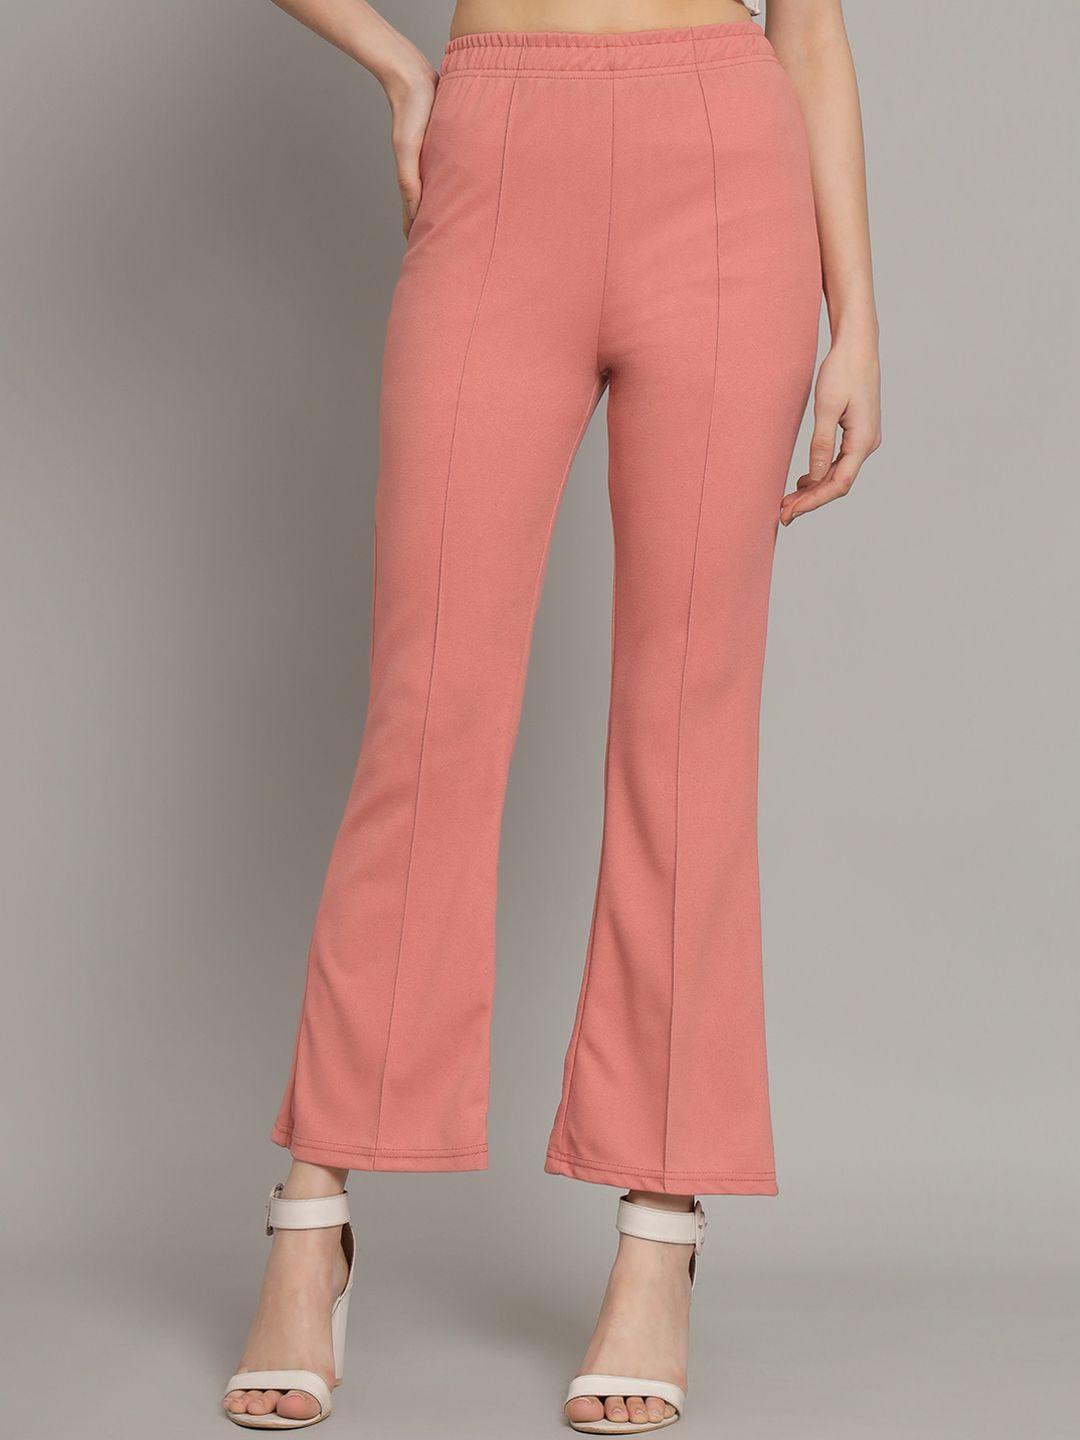 q-rious women peach-coloured high-rise pleated trousers